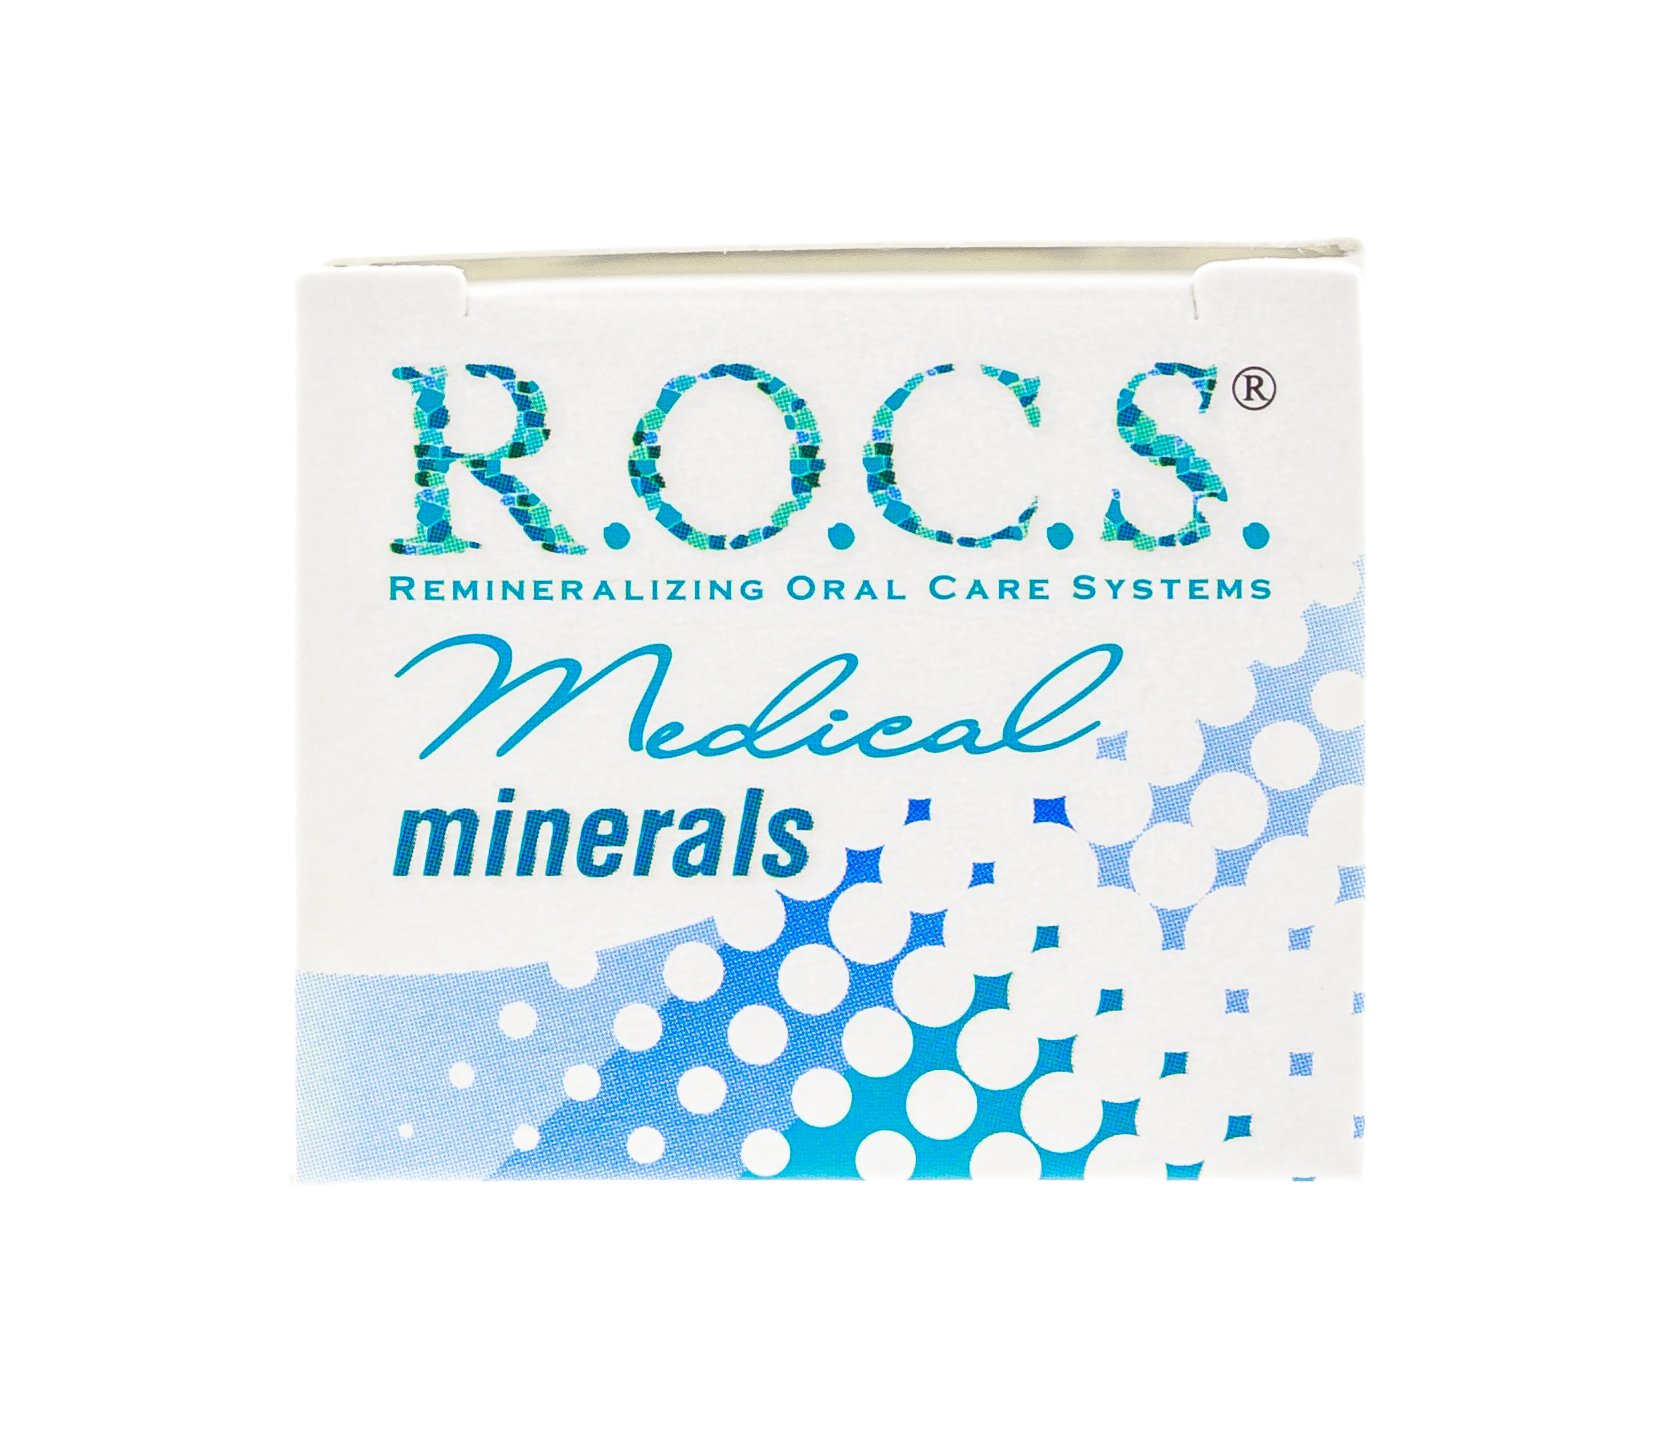 Рокс минералс гель купить. Гель r.o.c.s. Medical Minerals. R.O.C.S. Медикал гель реминерализующий, 45 г. Рокс минерал Медикал гель. Rocs Medical Minerals гель 45 гр Classic.